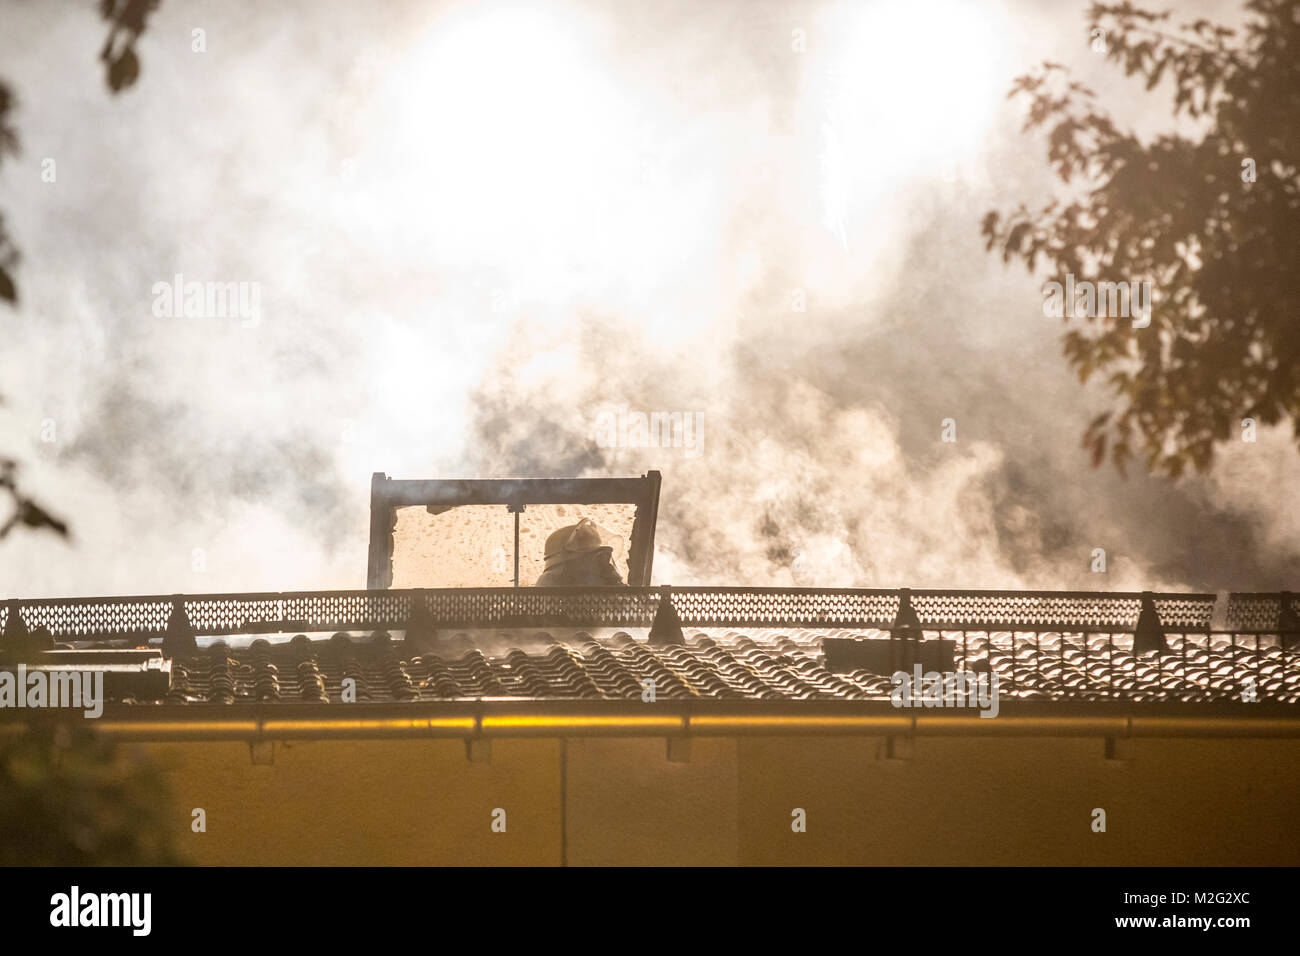 Der Dachstuhl eines Mehrfamilienhauses steht in der Nacht zum Mittwoch (01. Oktober 2014) in Frankfurt-Zeilsheim in Flammen. Zwei Bewohner des Hauses mussten mit einer Rauchgasvergiftung ins Krankenhaus gebracht werden. Ein Großaufgebot der Feuerwehr bekämpfte den Brand mehrere Stunden lang. +++ 3S PHOTO / Foto: Sven-Sebastian Sajak Stock Photo